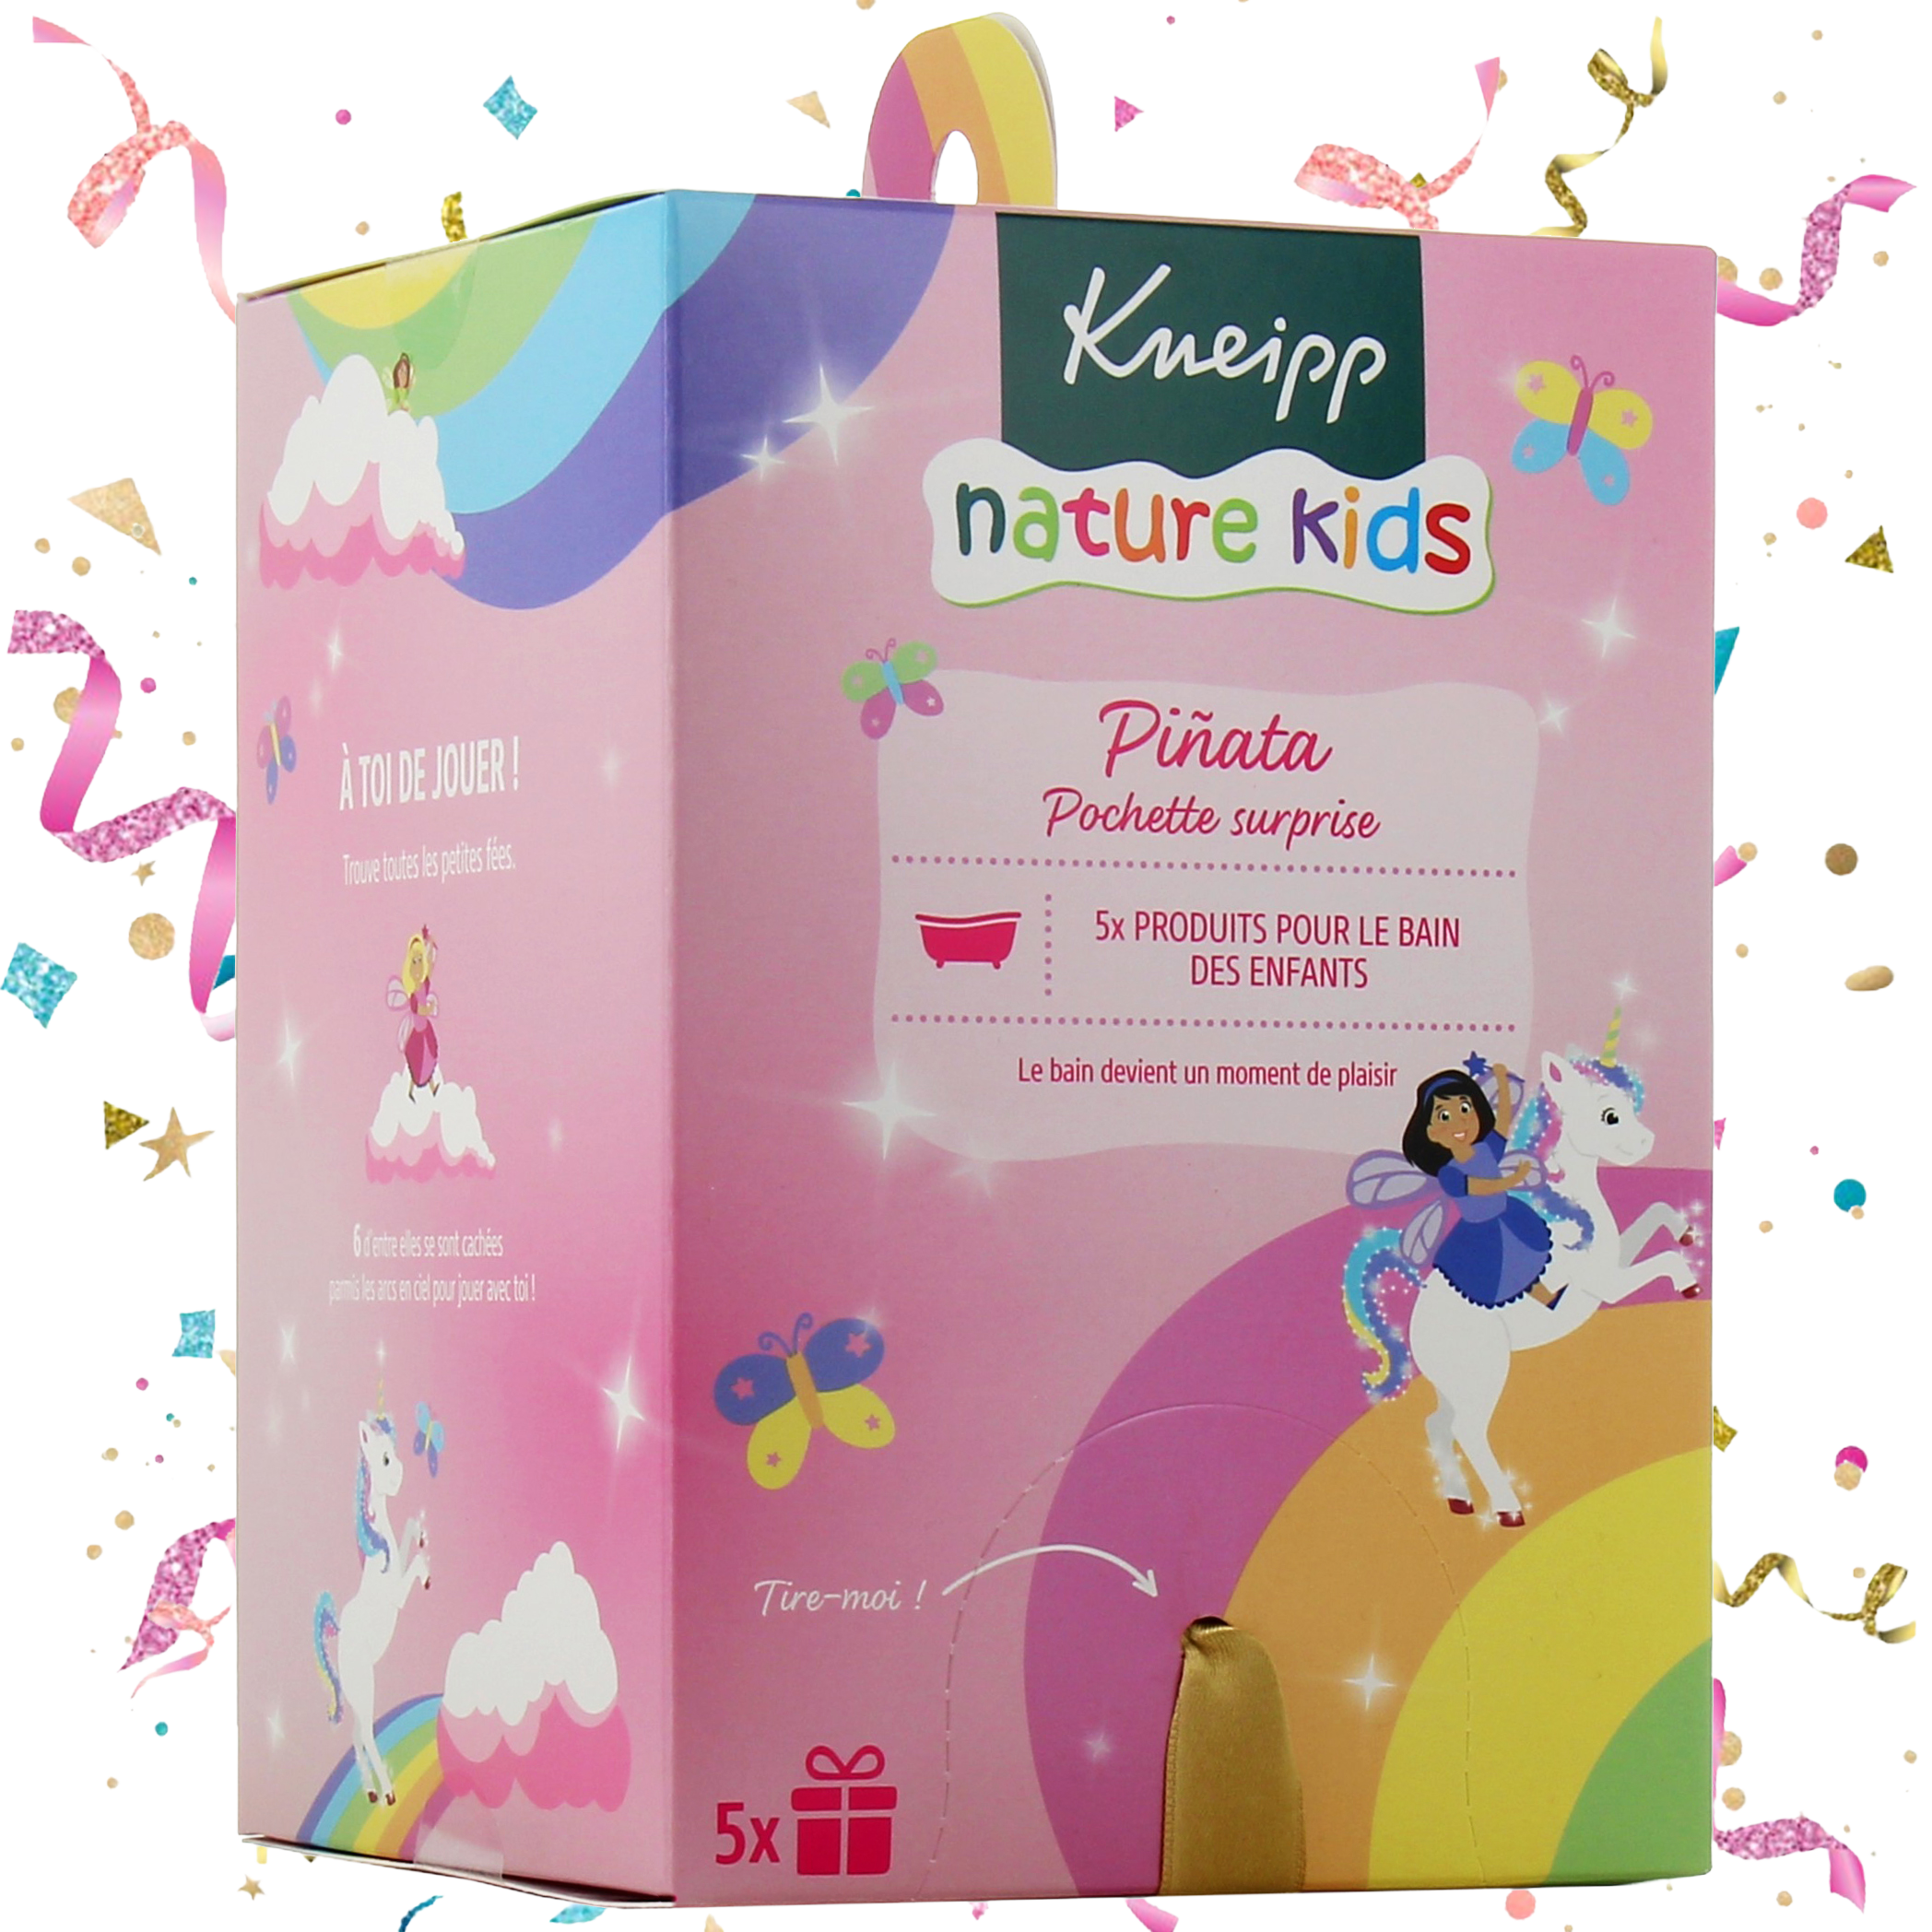 Kneipp pochette surprise piñata enfant - Produits pour le bain